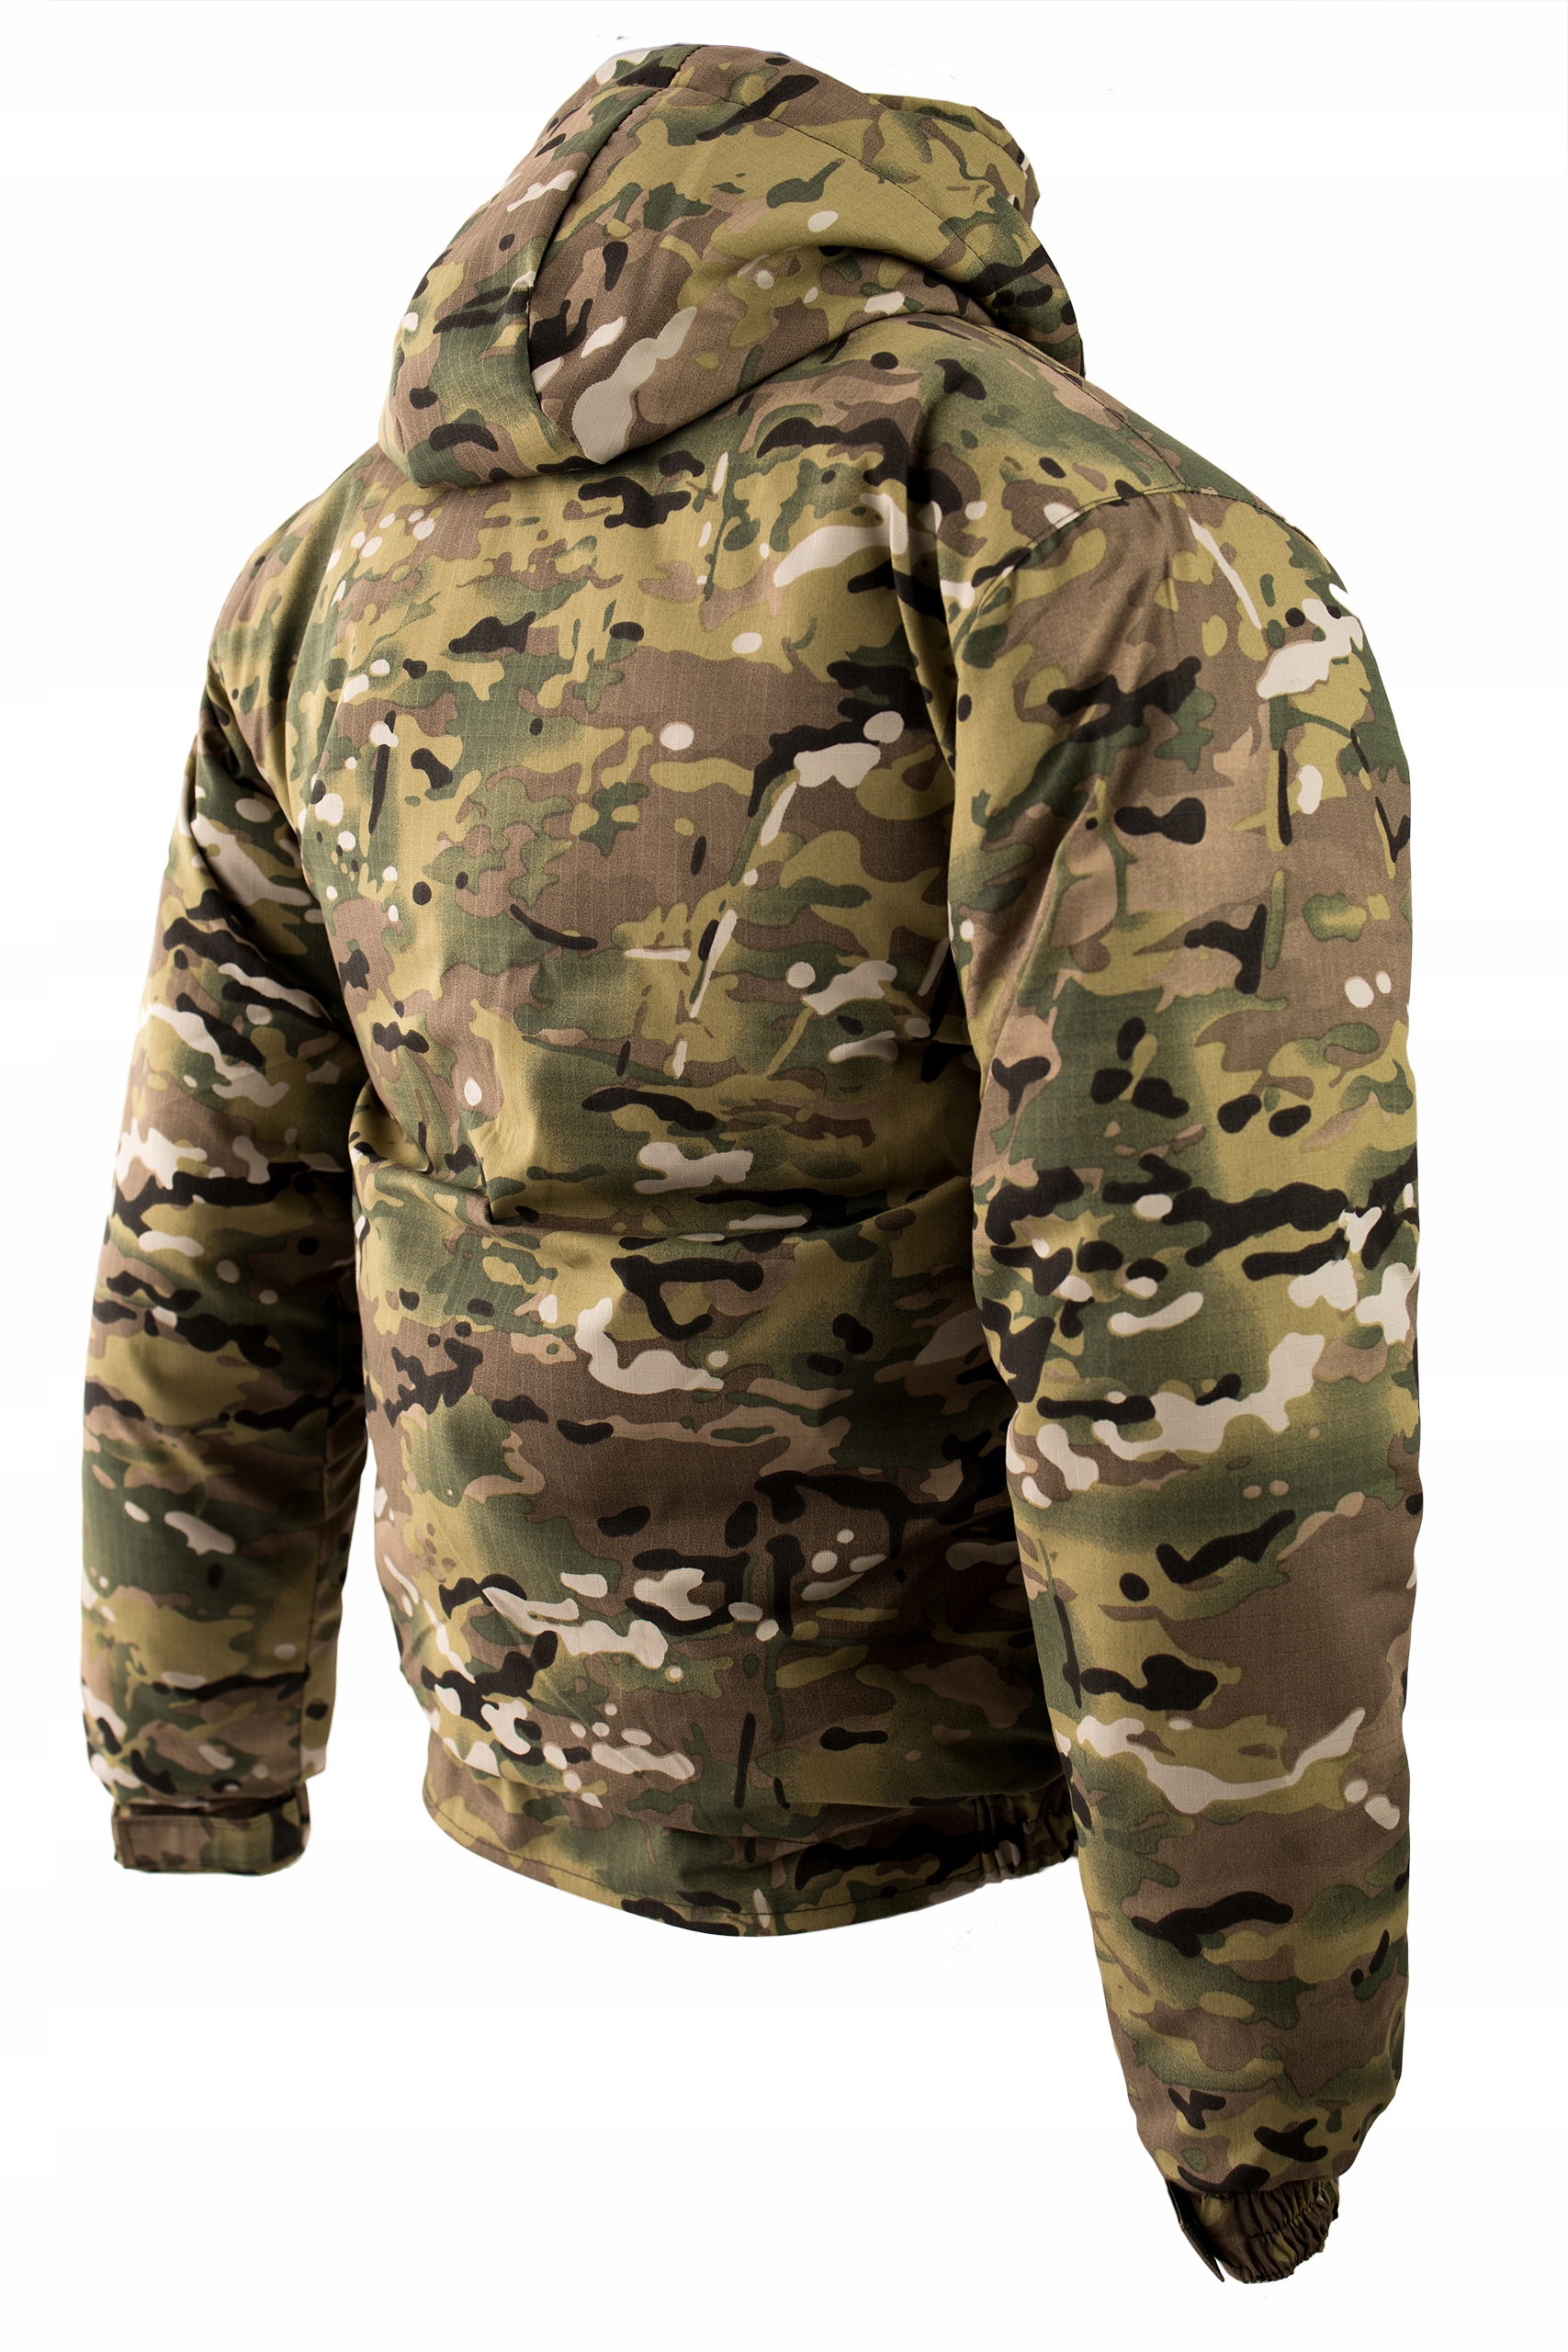 Військова зимова куртка ізольована Multicam roz. М Інший тип